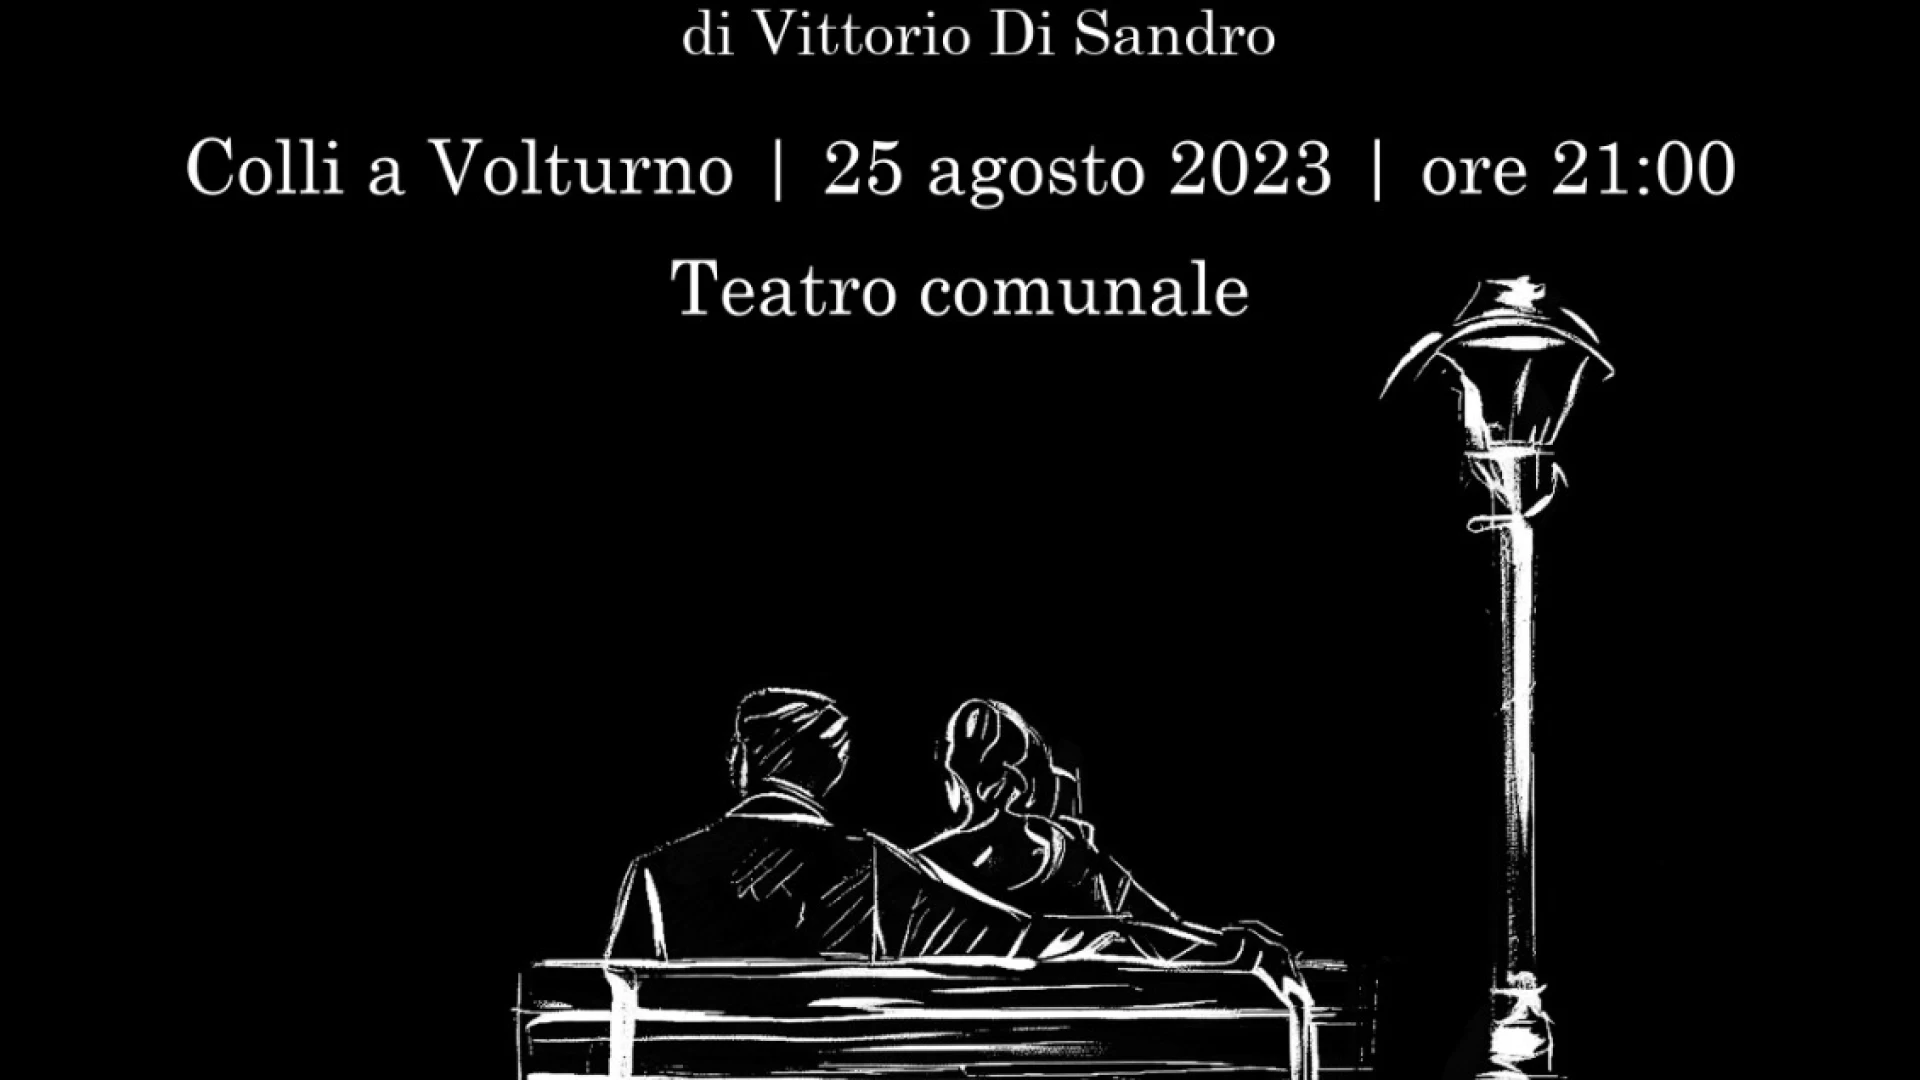 Colli a Volturno: “Cosi e’ stato, se vi pare”. Il 25 agosto in scena la commedia scritta e diretta da Vittorio Di Sandro.